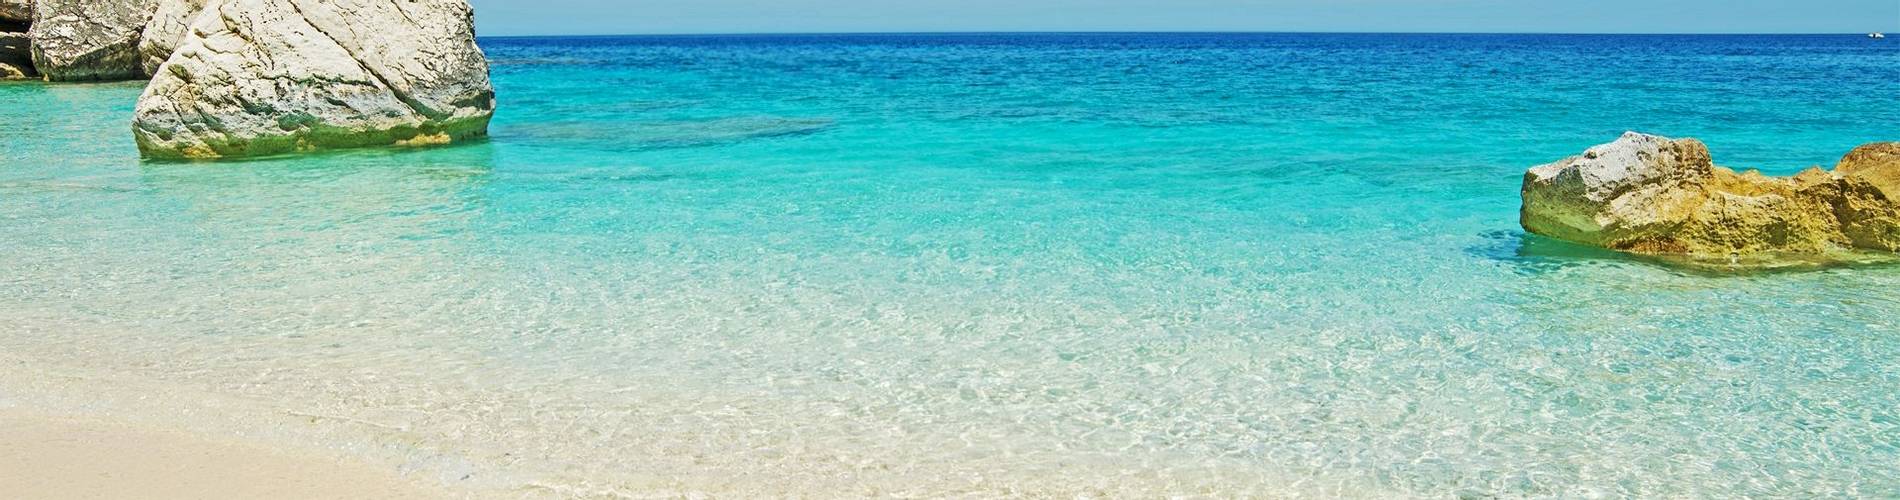 Sardinia Beach.jpg